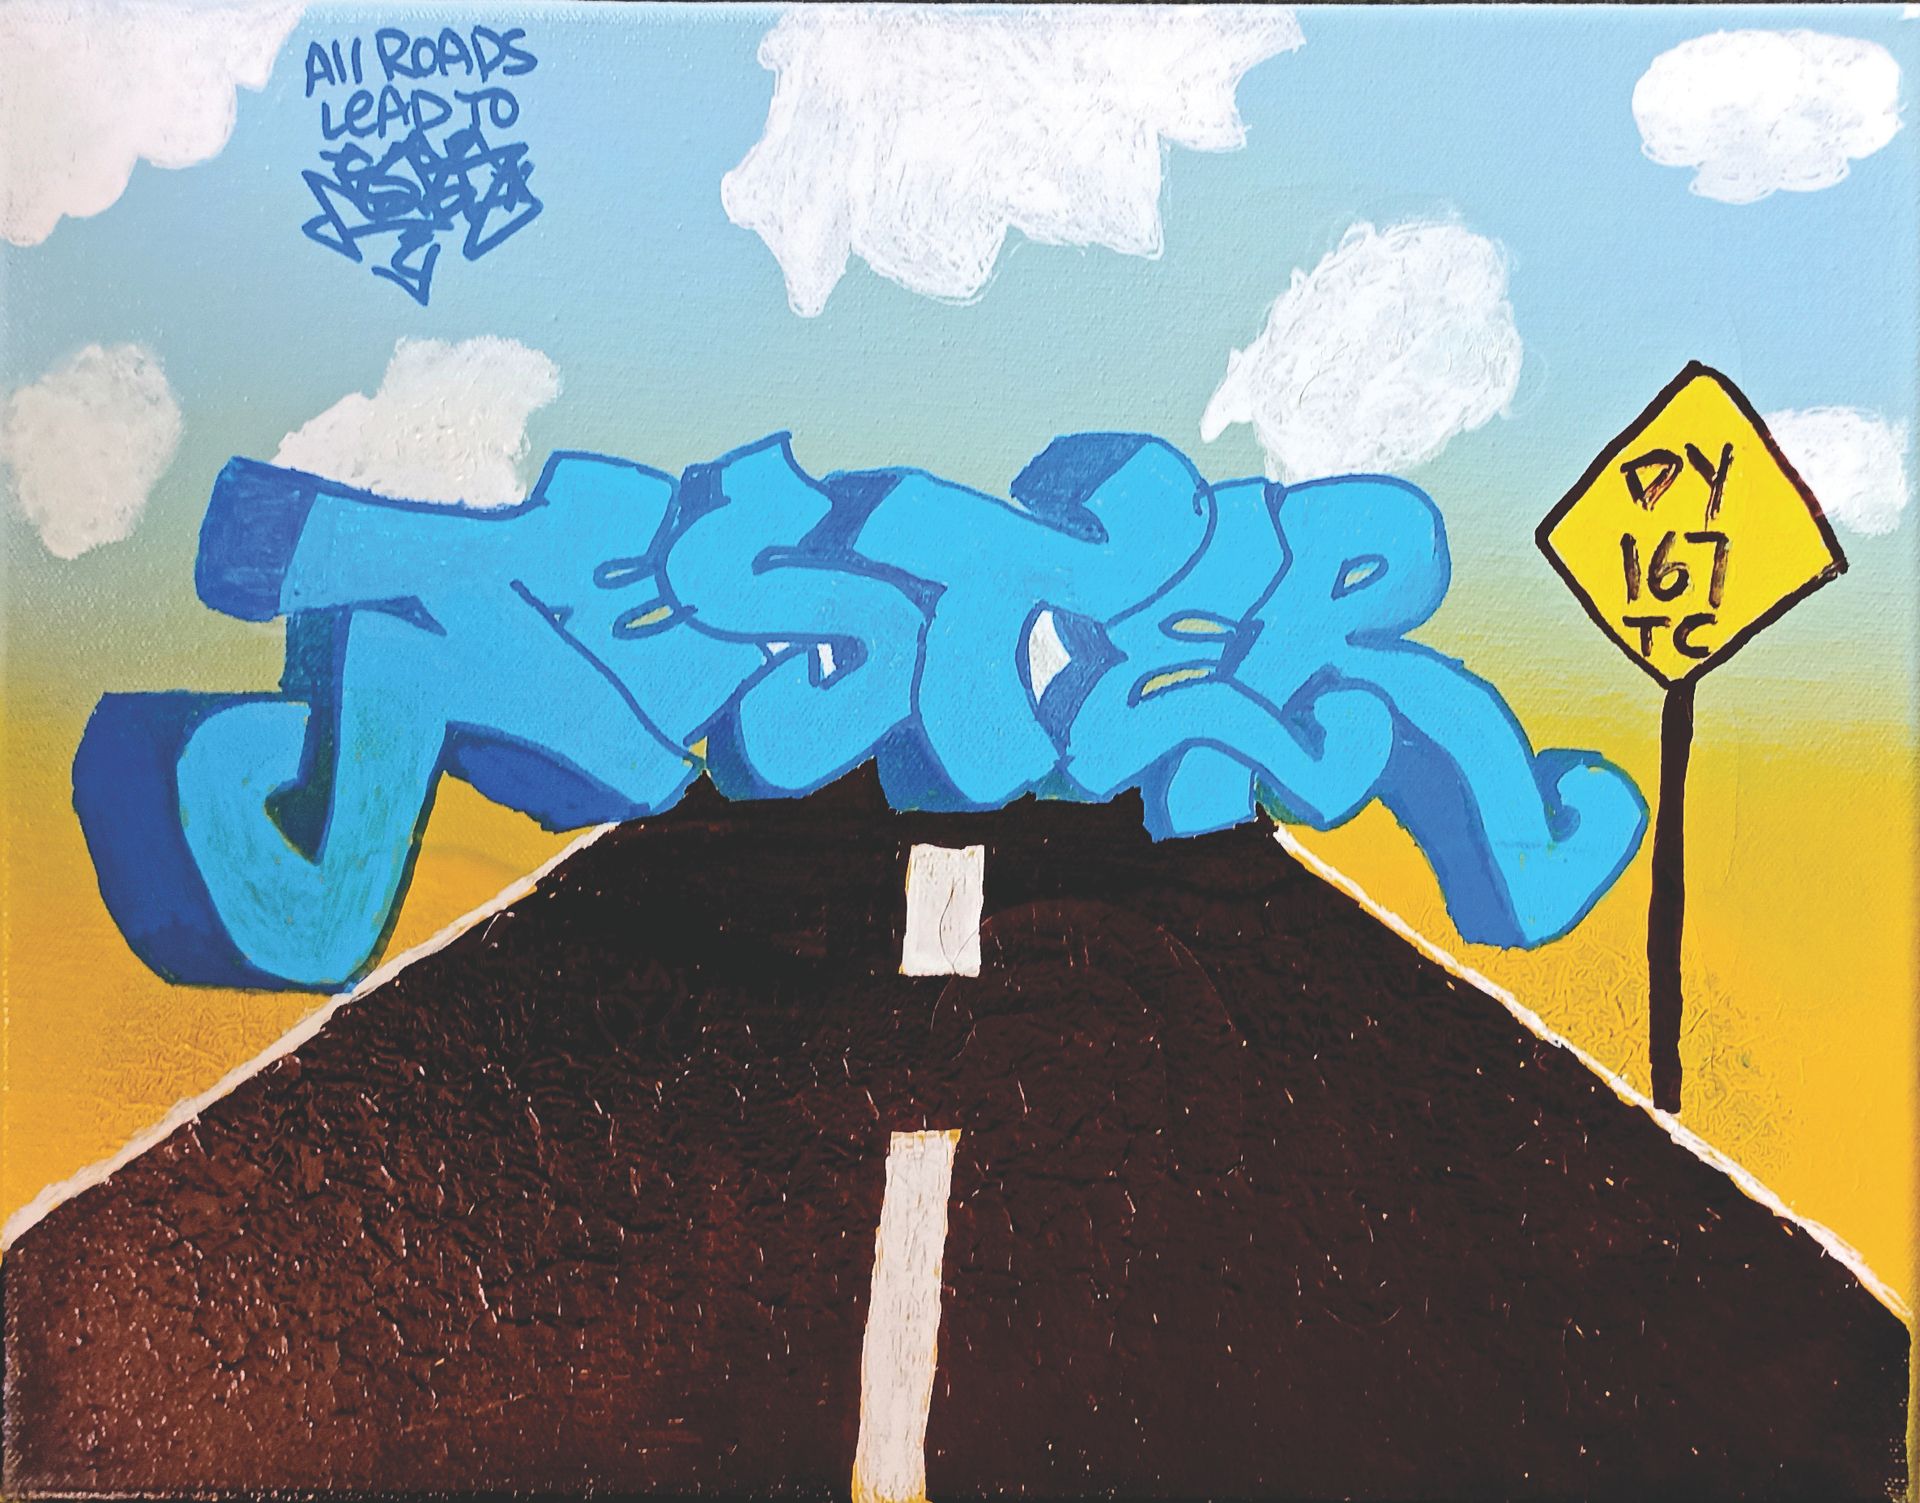 Null JESTER又名DY167 (20日)

条条大路通向杰斯特

画布上的混合媒体

作品中有签名，左上角有标题

28 x 36 厘米



出处：私&hellip;